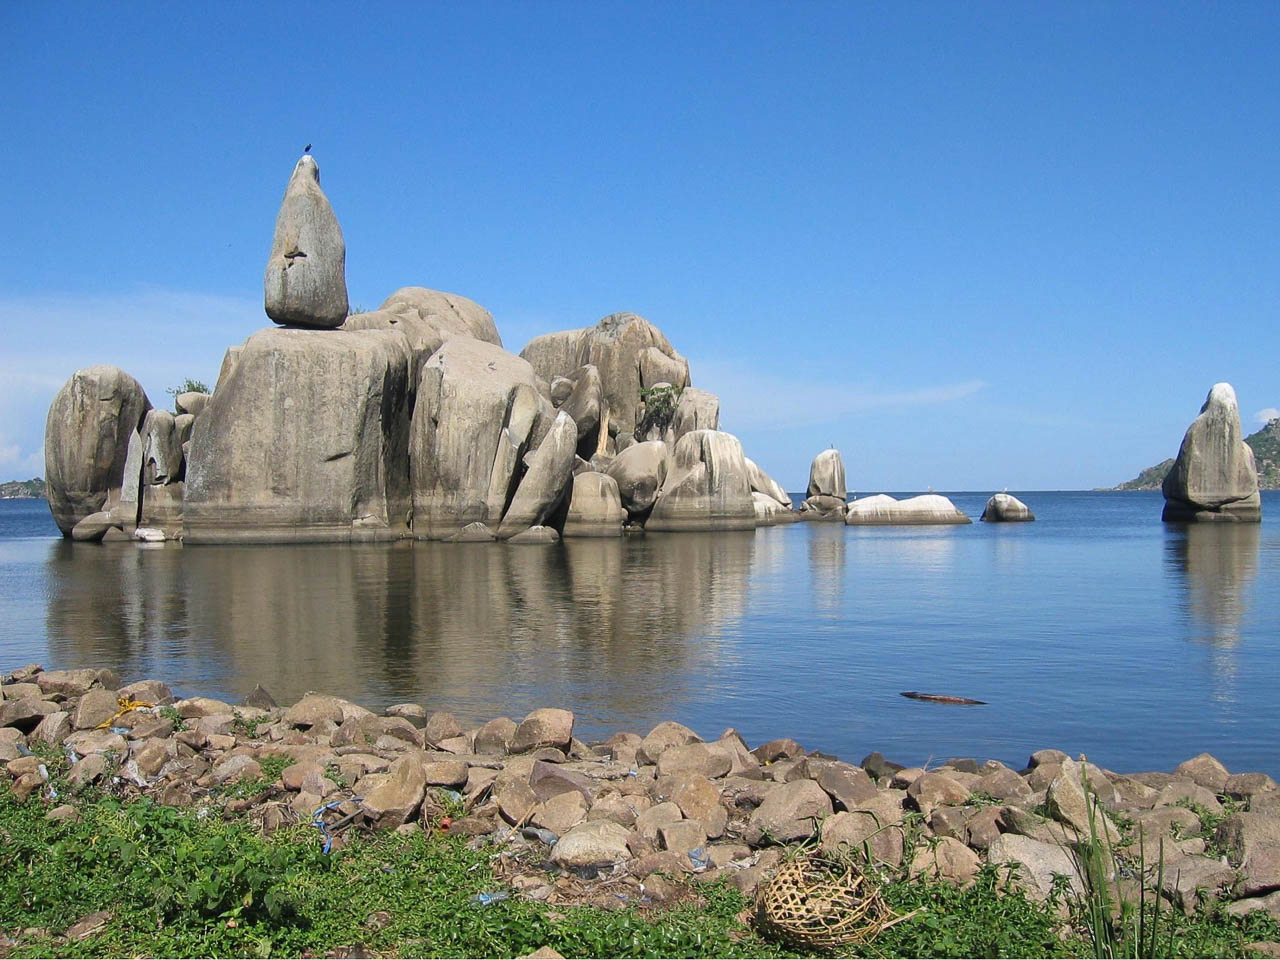 Lake Victoria in het water grote rotsblokken met daar bovenop een rotsblok in de vorm van een peer en een vogels on top dit wordt de bismarck rock